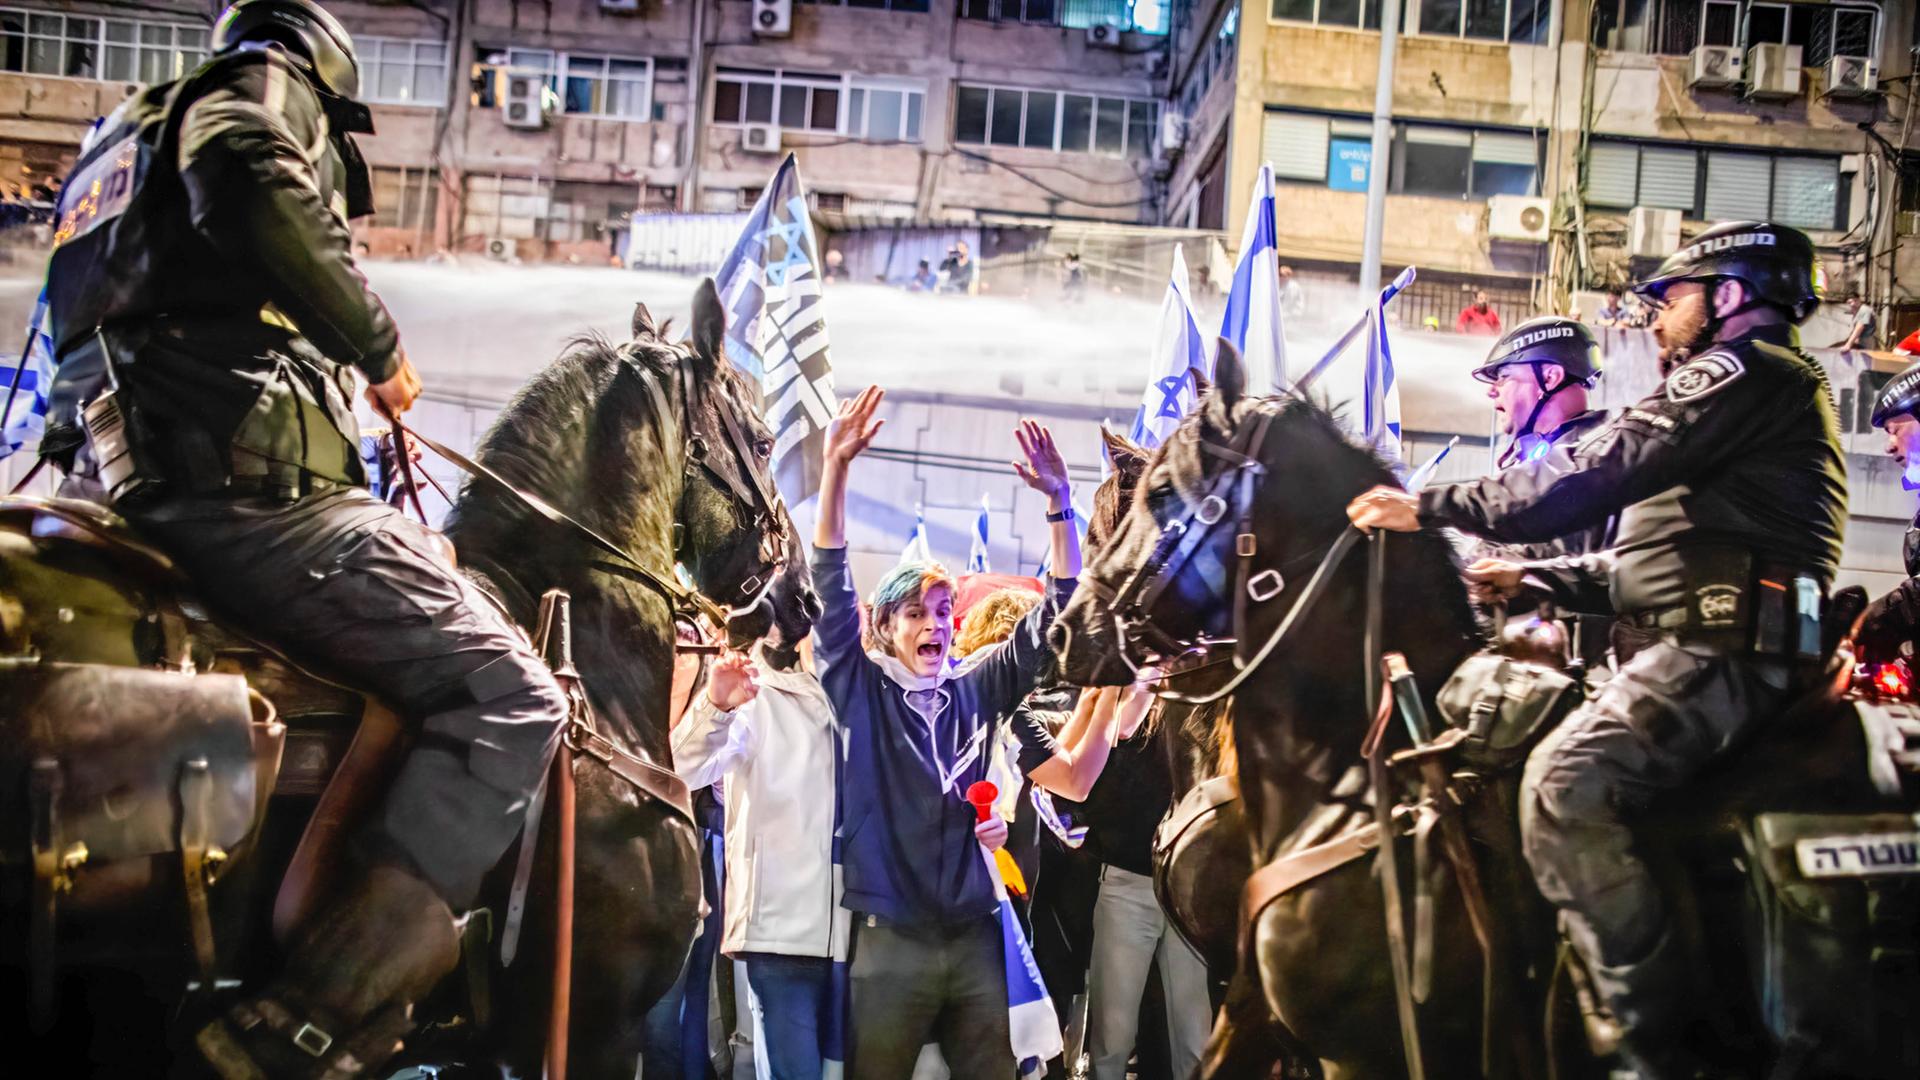 Das Foto zeigt einen israelischen Demonstranten mit erhobenen Händen. Polizisten auf Pferden bedrängen den Mann.